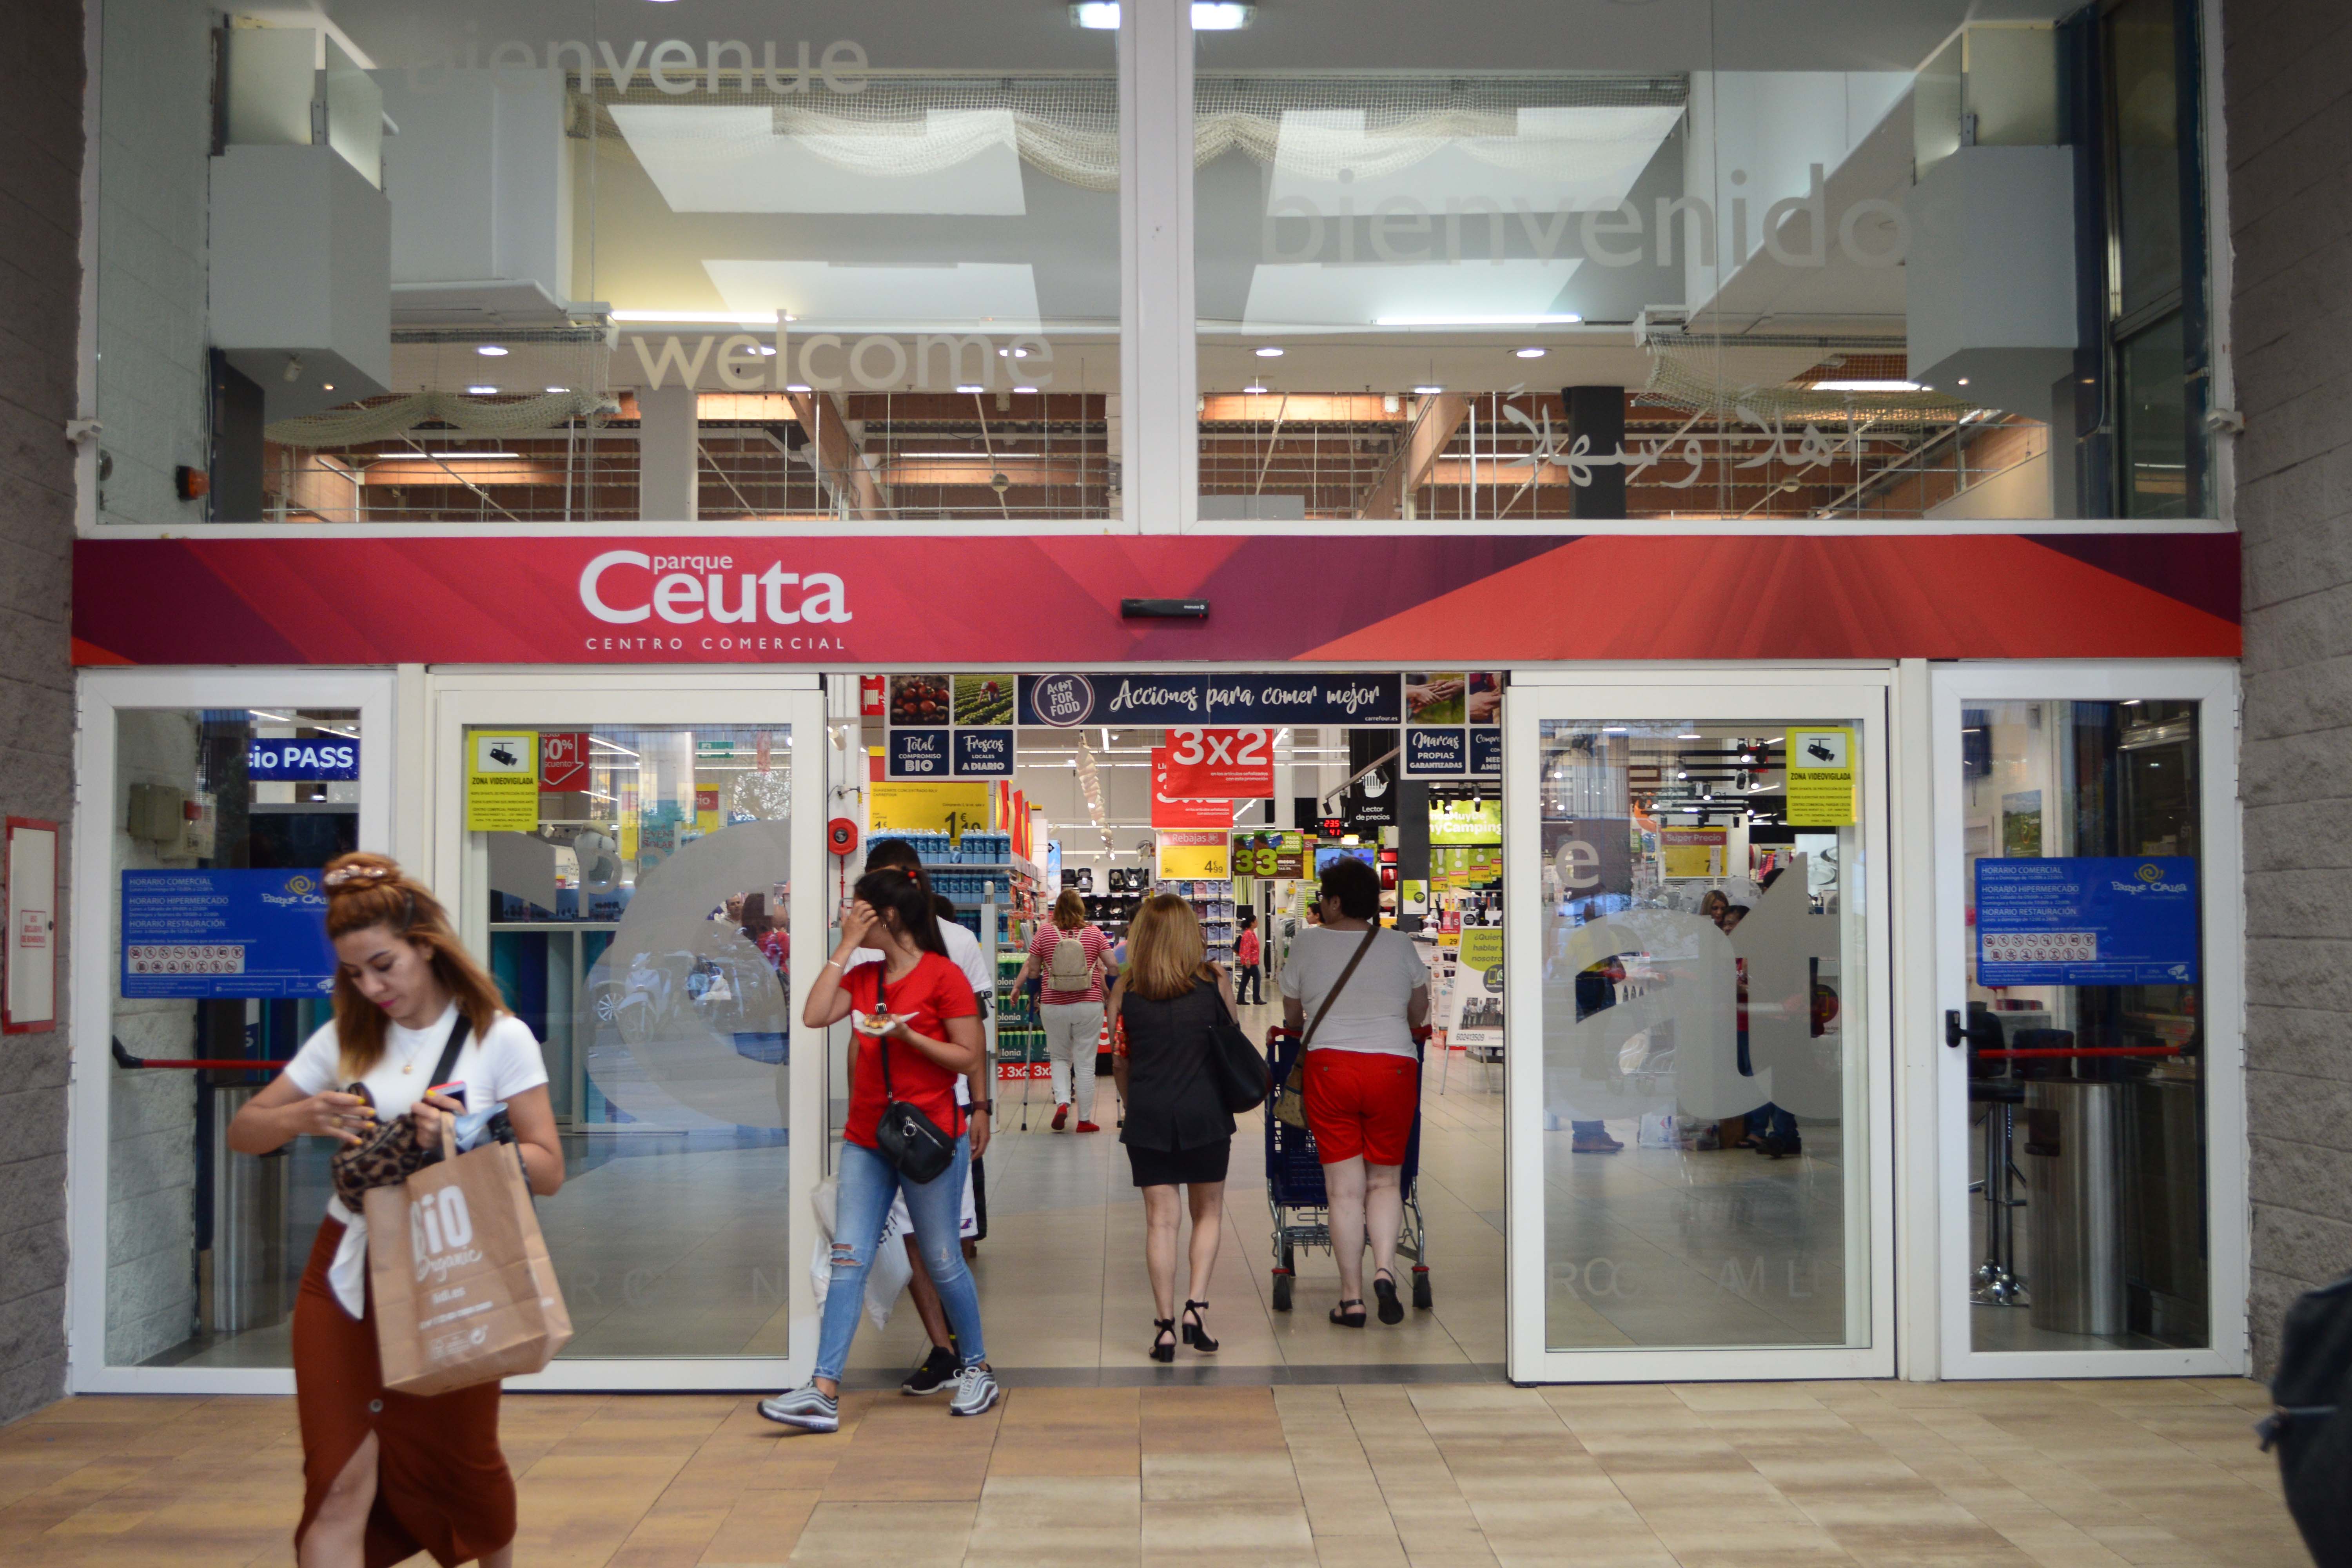 Panda Peligro Intención La tienda online de Carrefour llega a Ceuta